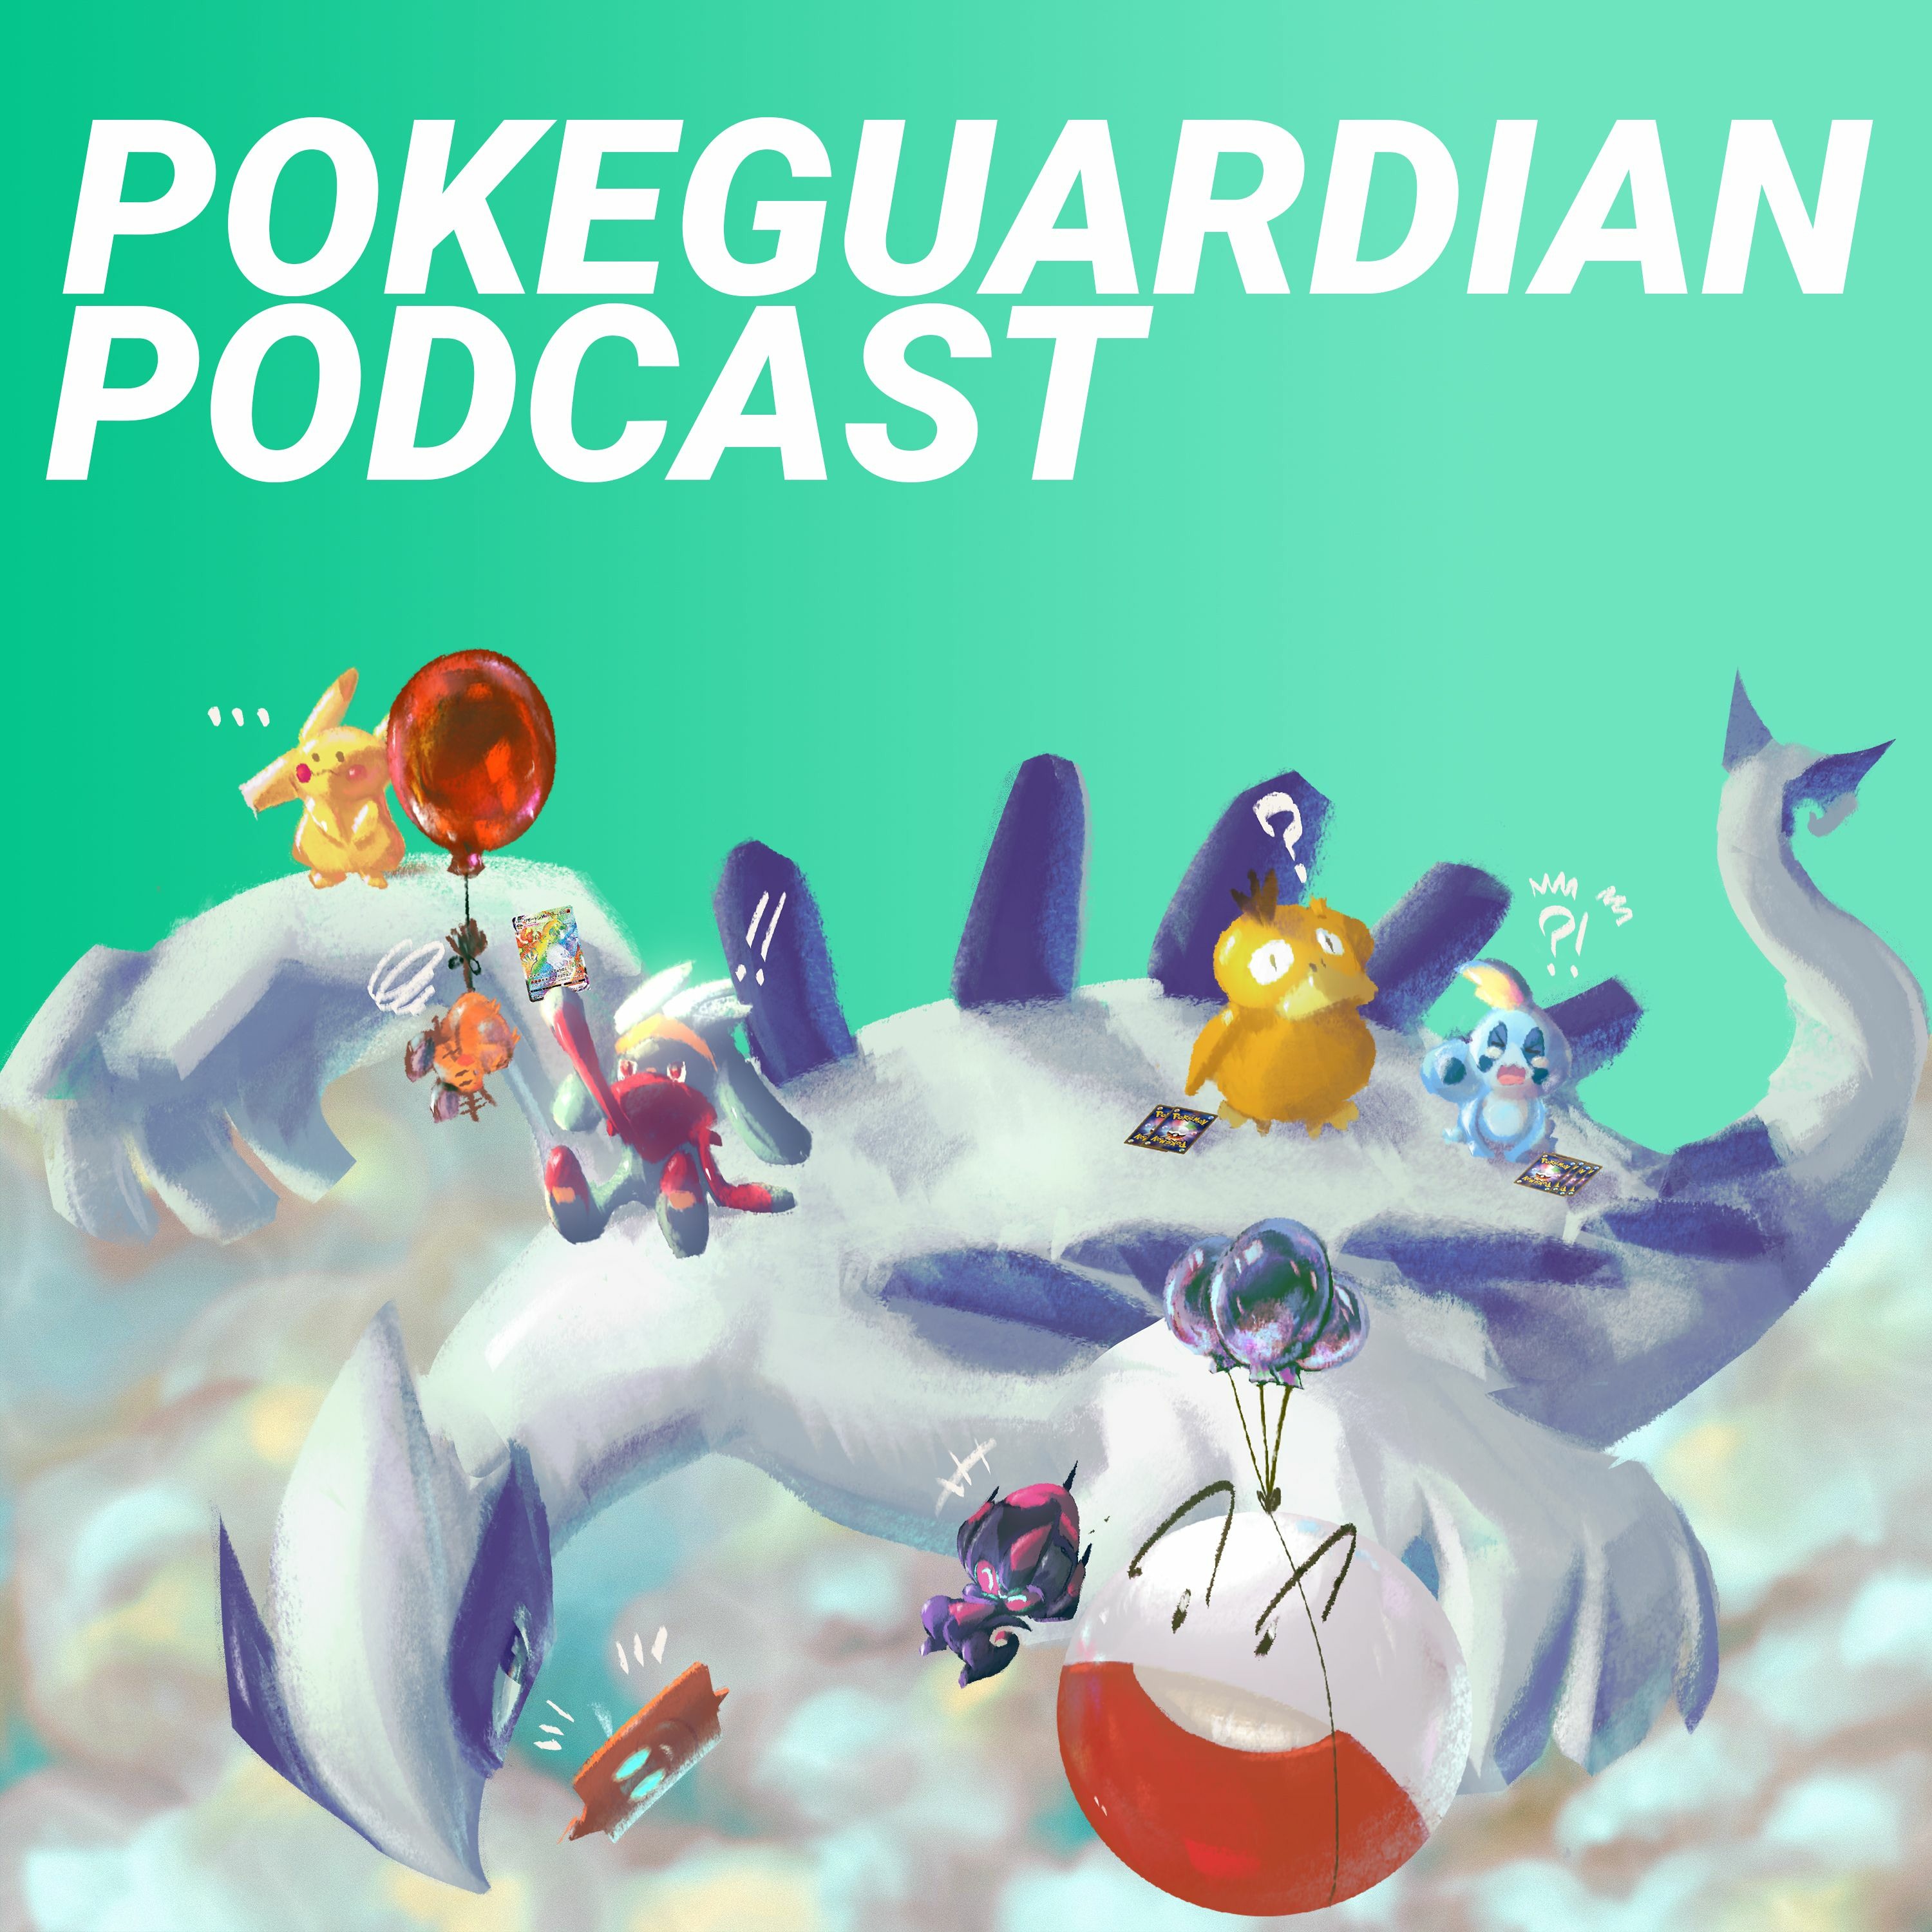 PokeGuardian Podcast #37 - Pokémon Card 151 Set, Scarlet ex / Violet ex AR/SAR Cards, Signed Cards